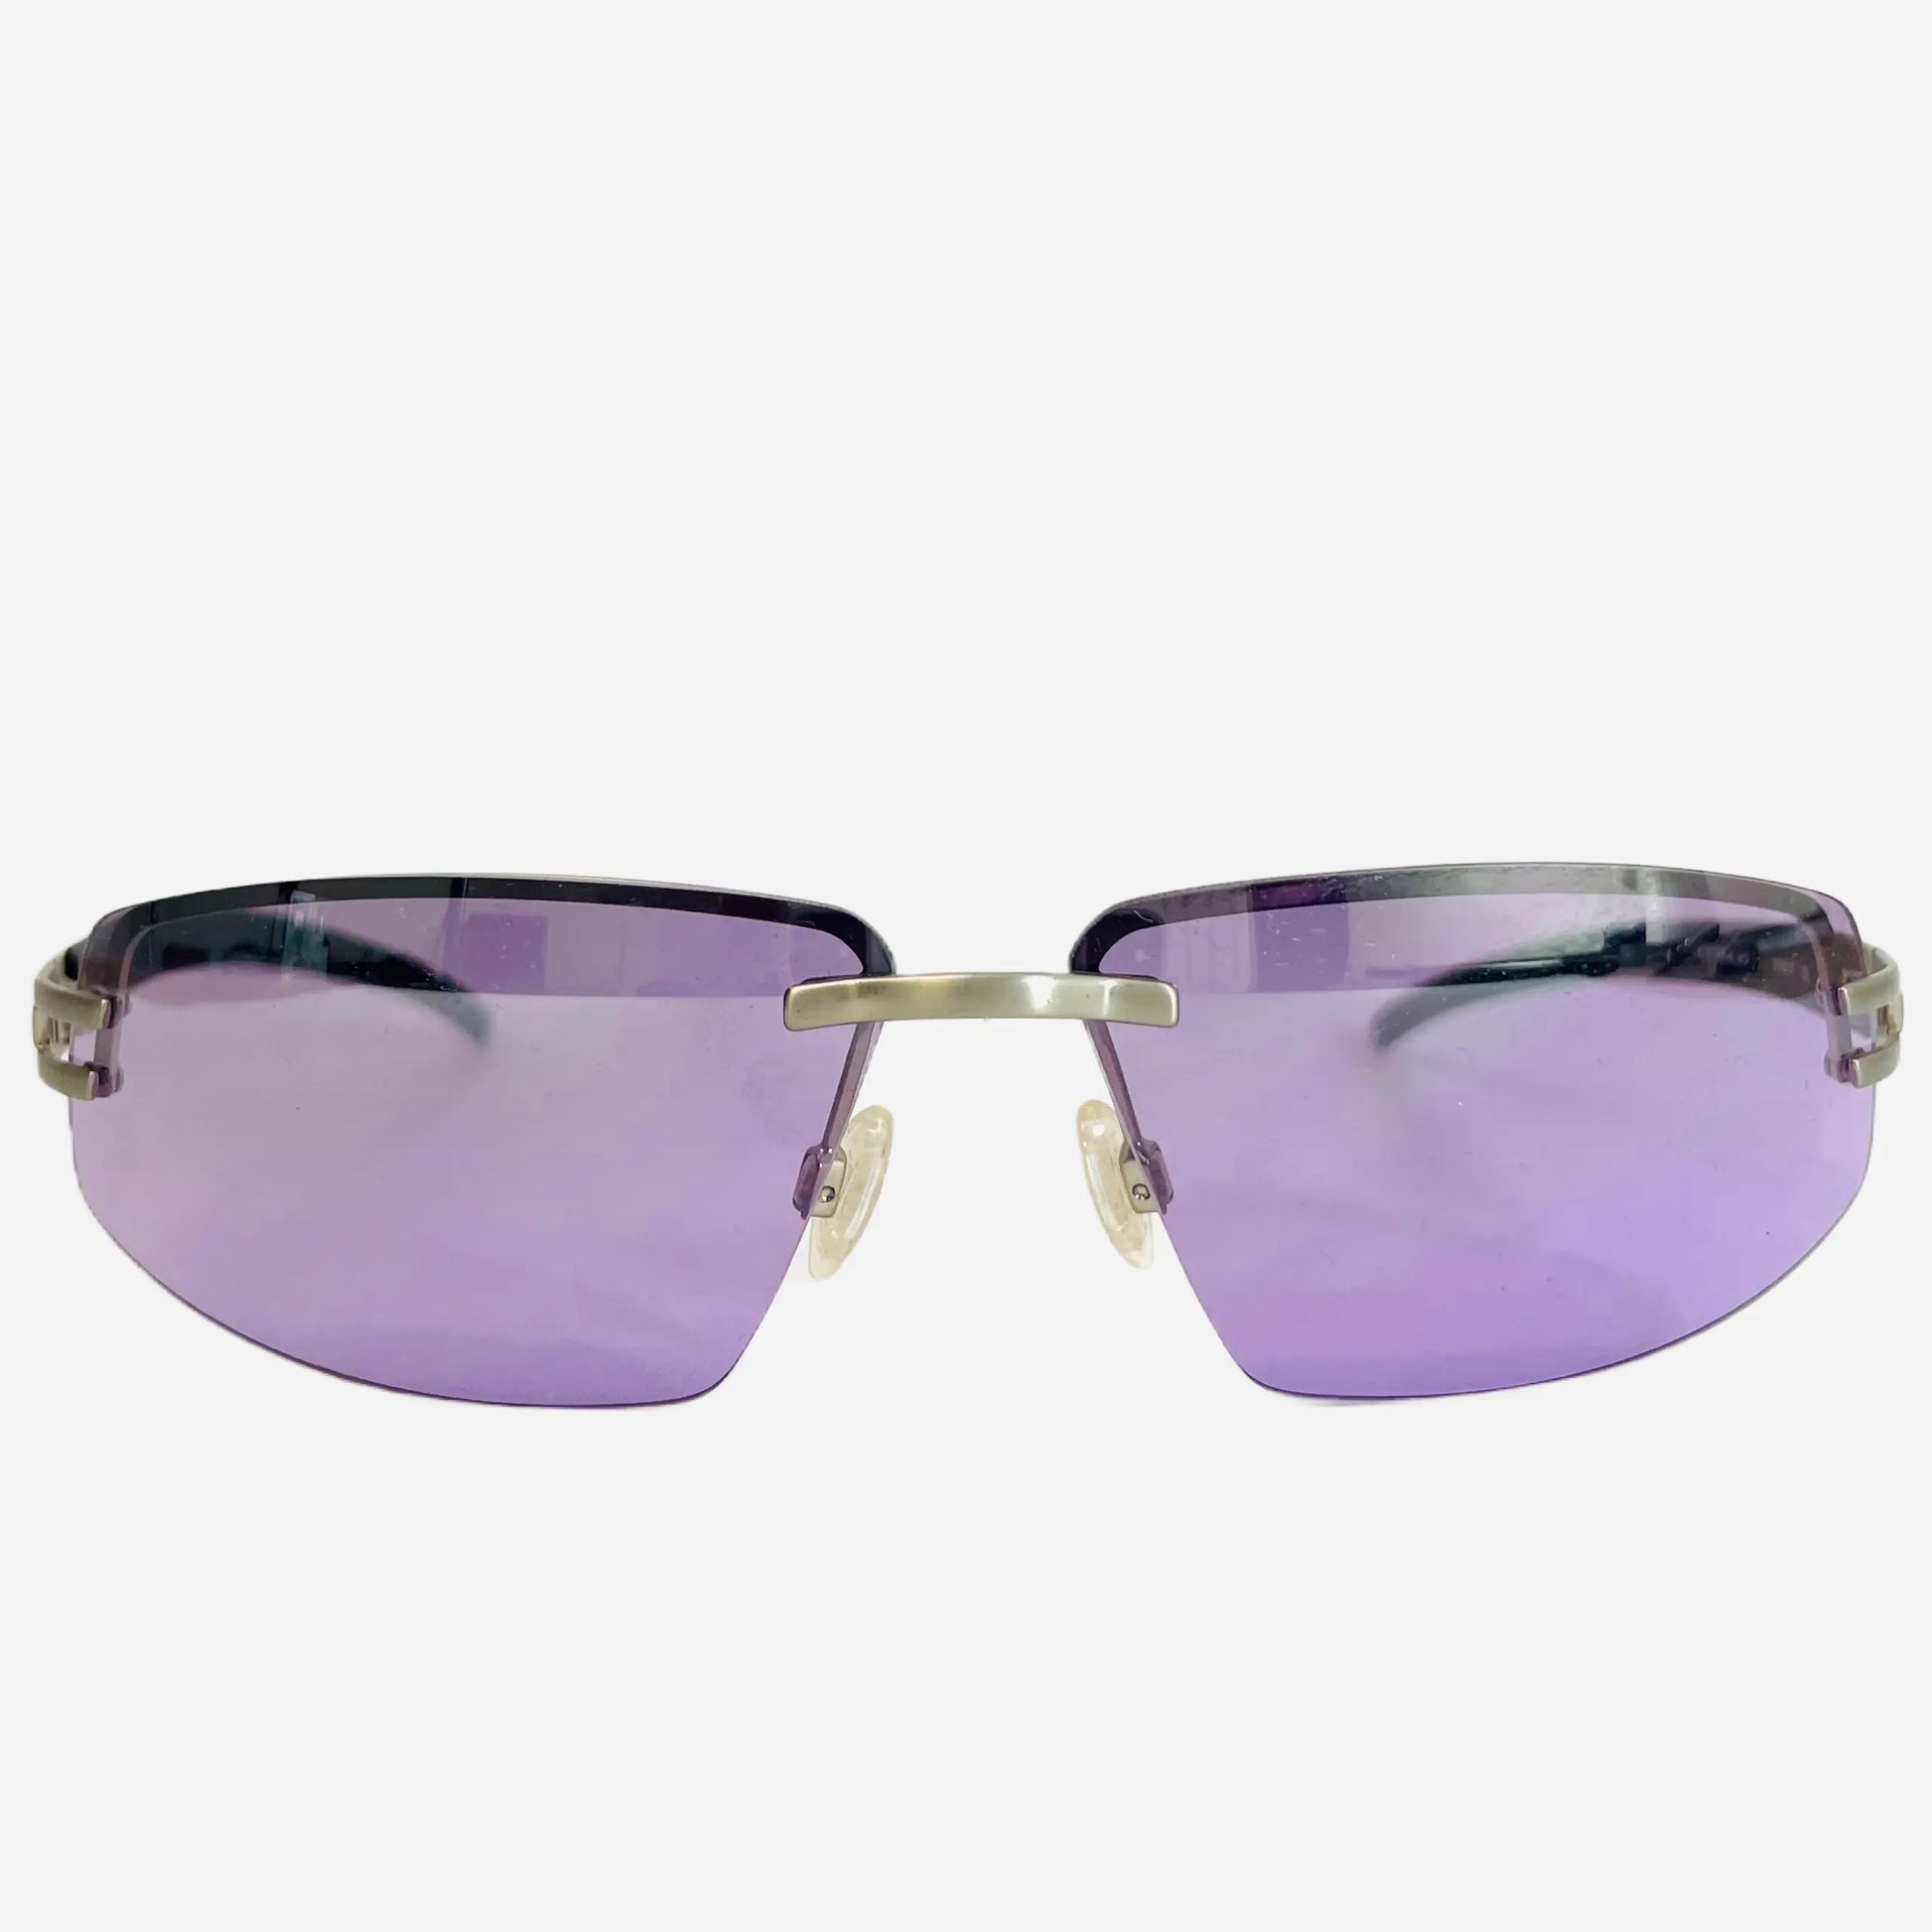 Vintage-Rebook-Sonnenbrille-Sunglasses-Schnelle-Brille-90s